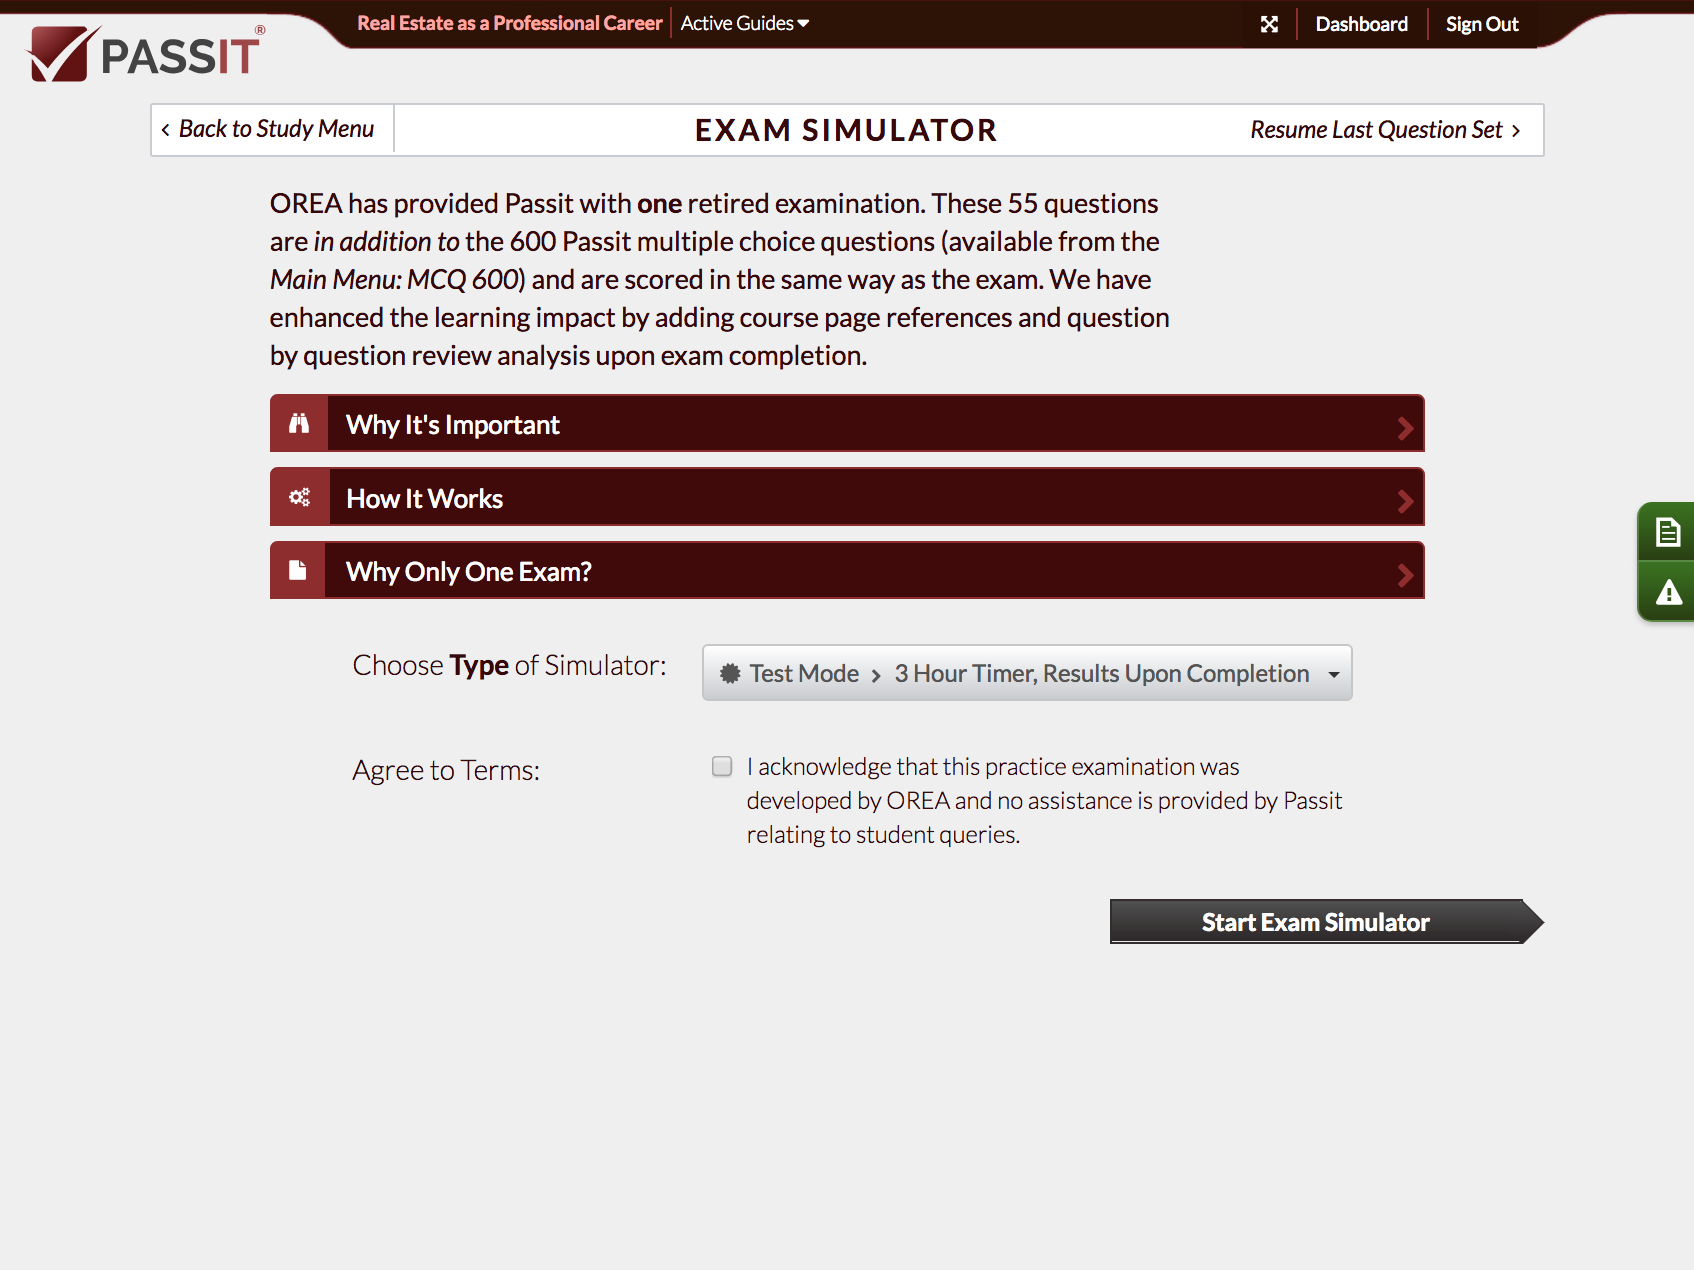 Screenshot of Exam Simulator Menu